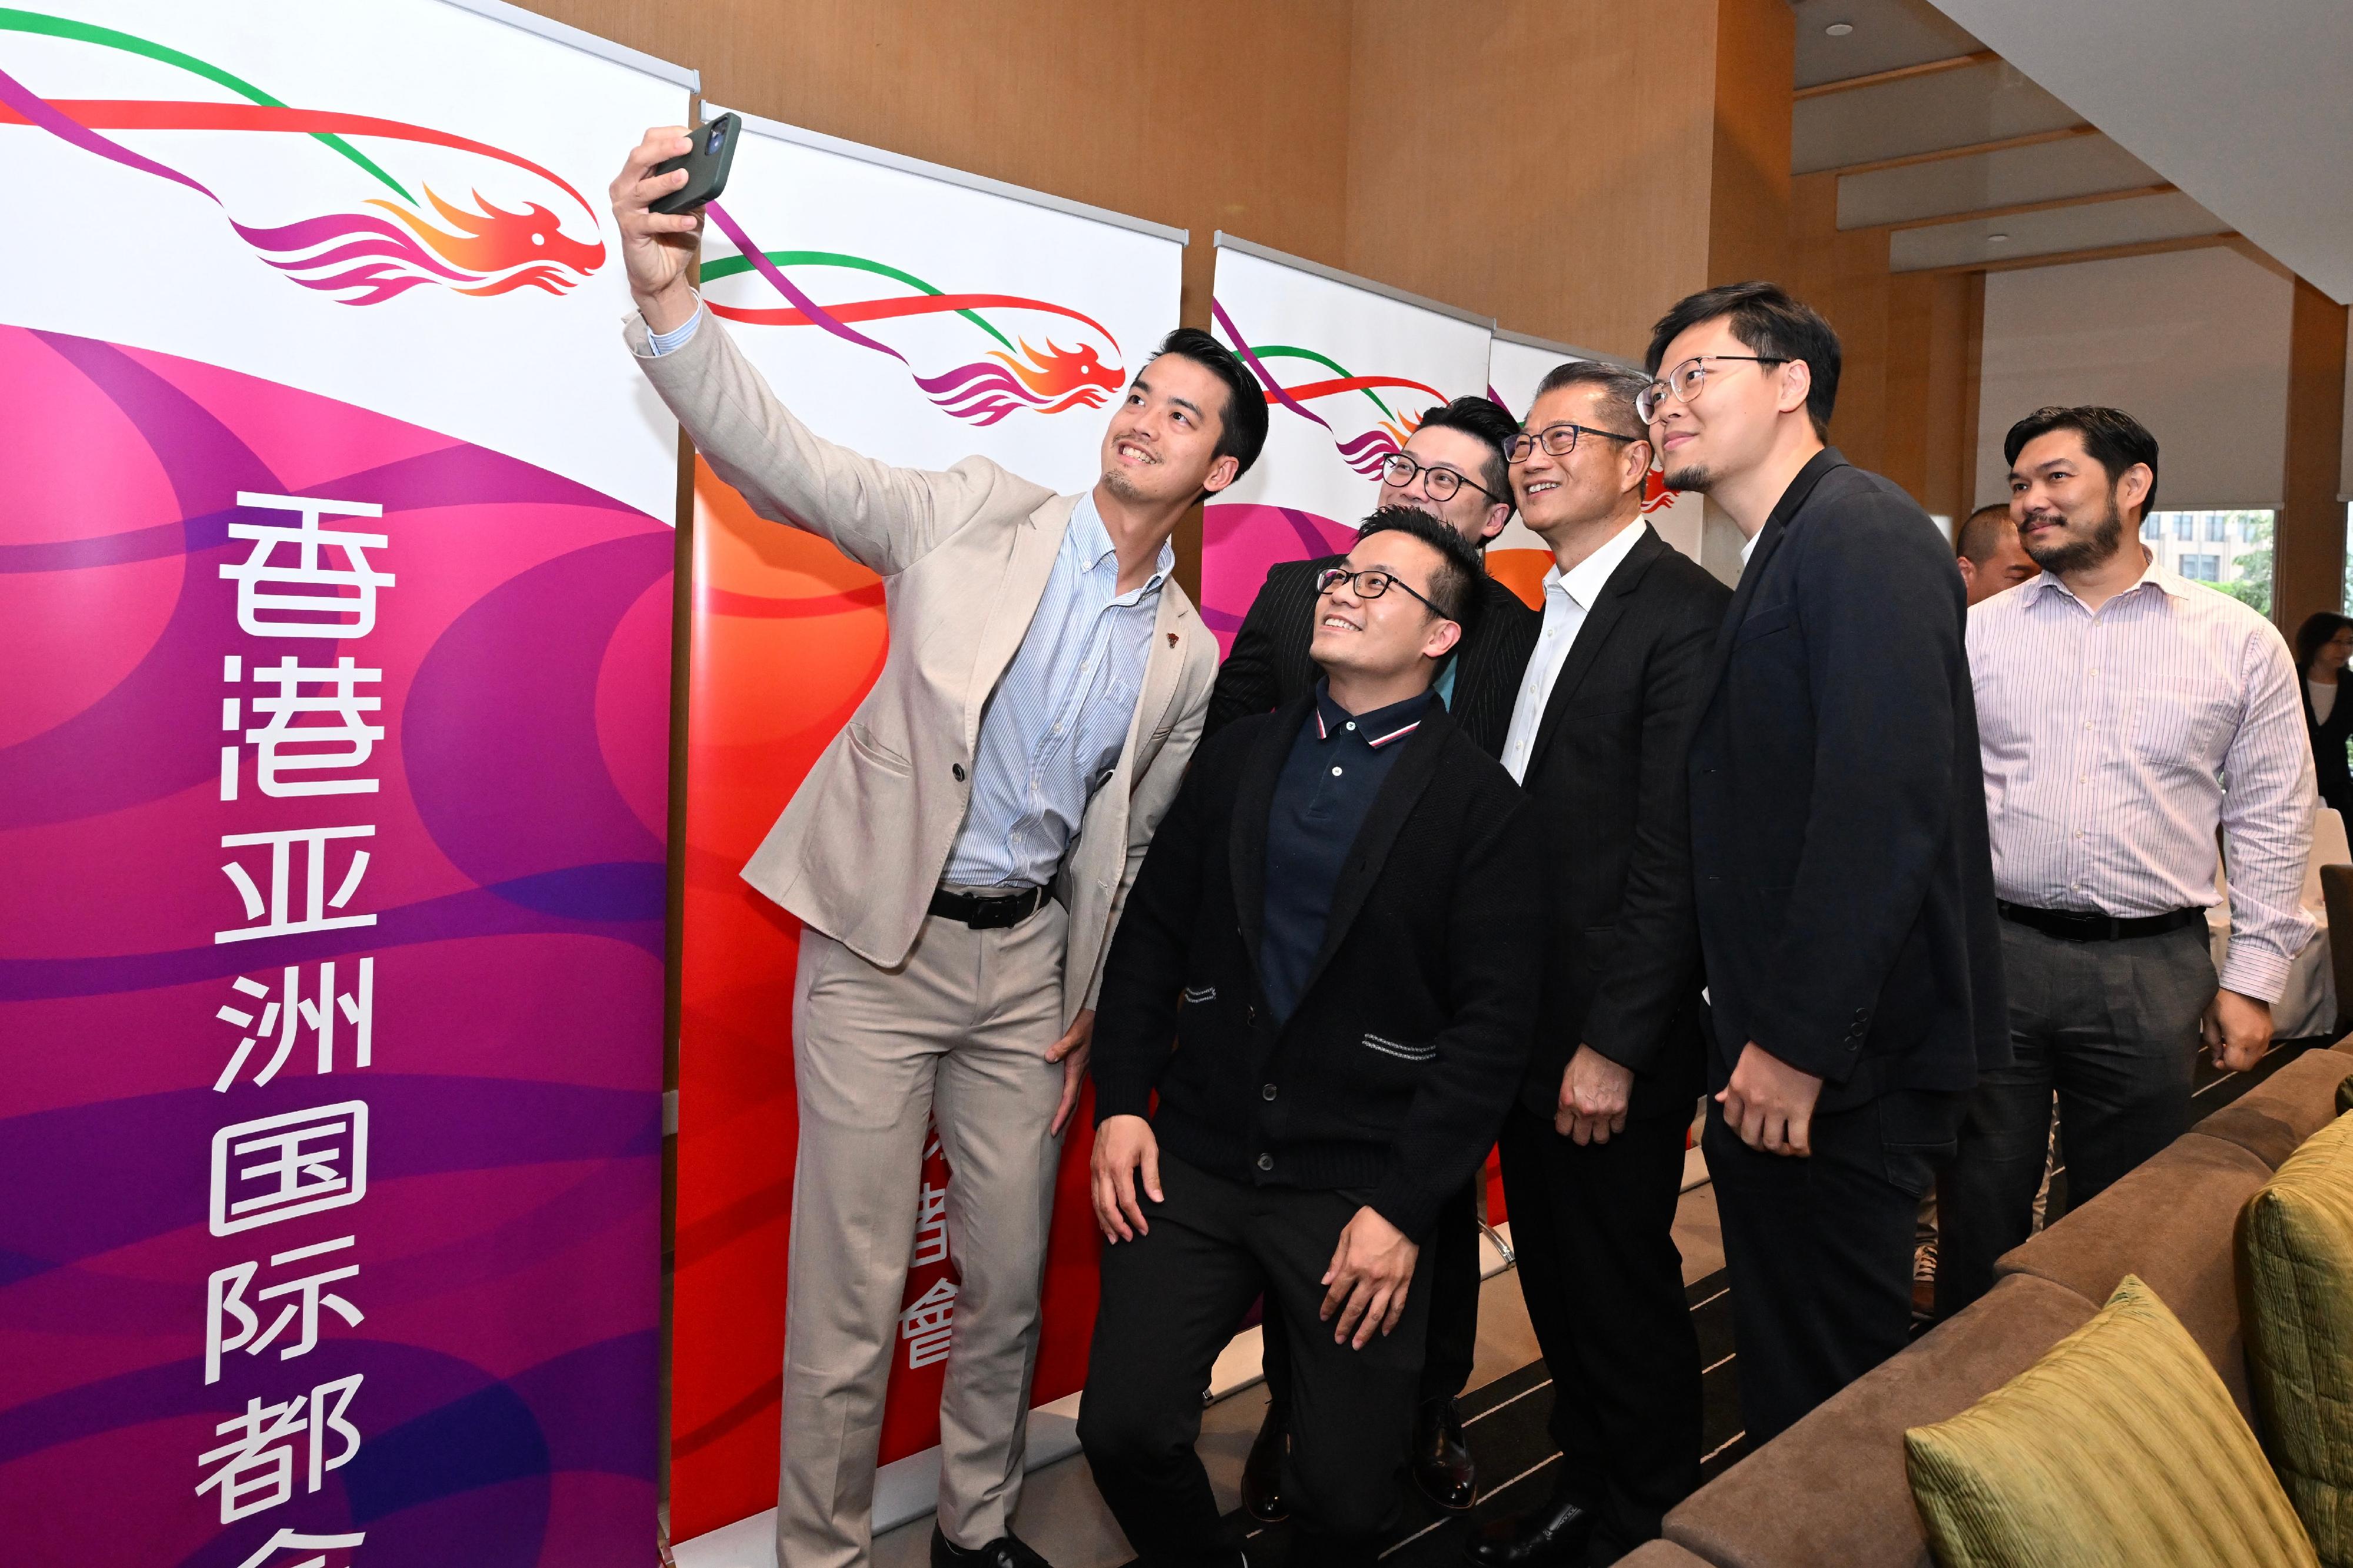 財政司司長陳茂波今日（三月十五日）到訪廣州市，與在穗的香港青年企業家舉行座談會，交流意見。圖示陳茂波（右三）與香港青年企業家自拍留念。